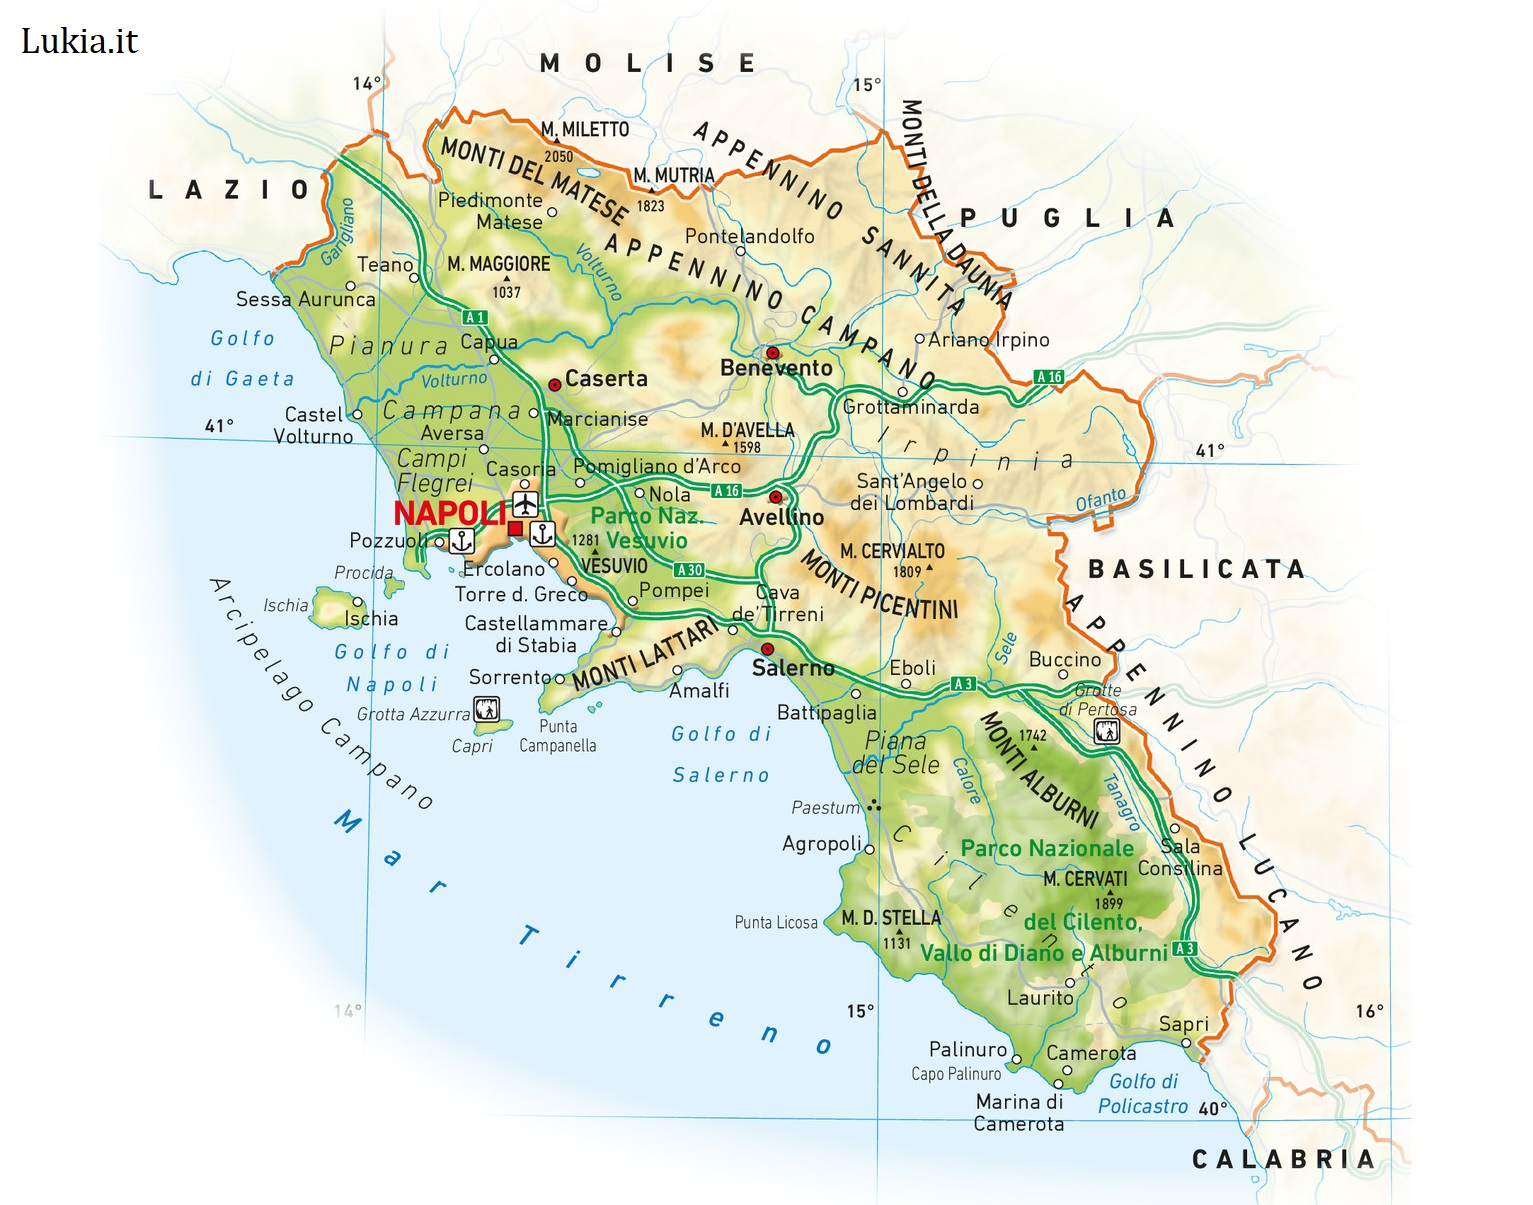 La Campania: Terra di contrasti e bellezze mozzafiato La Campania, situata nel sud dell'Italia, è una regione ricca di storia, cultura e bellezze naturali. Con la sua capitale, Napoli, e le famose località costiere come la Costiera Amalfitana e l'Isola di Capri, la Campania attira visitatori da tutto il mondo. La regione è famosa per i suoi siti archeologici, tra cui le antiche città di Pompei ed Ercolano, che sono state sepolte sotto le ceneri dell'eruzione del Vesuvio nel 79 d.C. Questi siti offrono uno sguardo unico sulla vita dell'antica Roma e sono patrimonio mondiale dell'UNESCO. - Immagini gratis